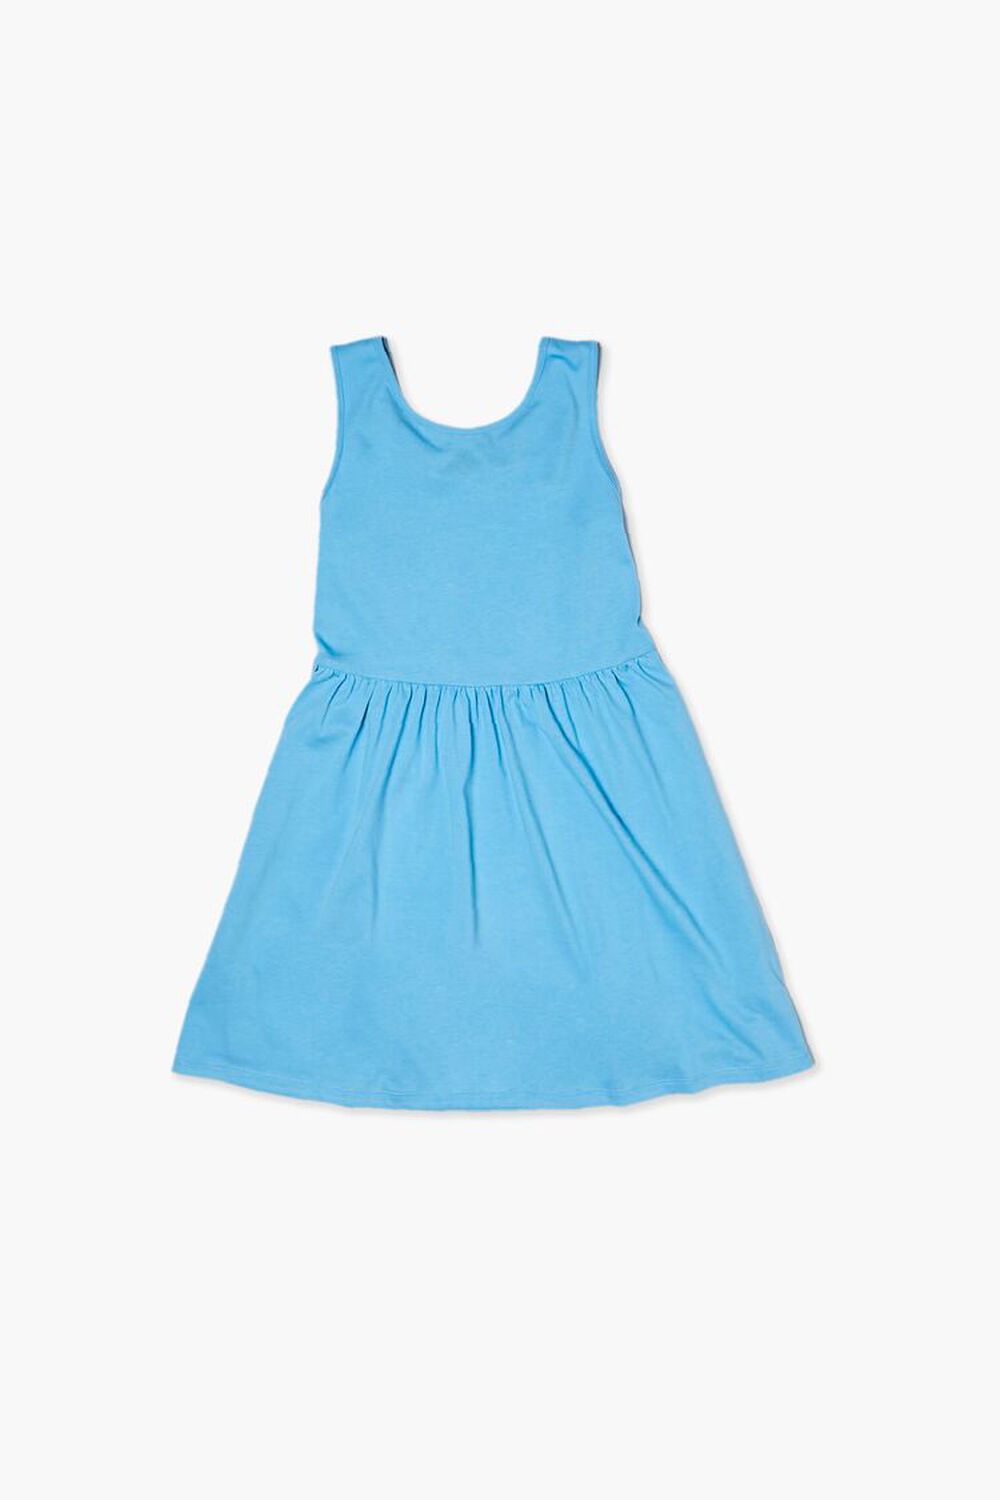 BLUE Girls Skater Dress (Kids), image 1